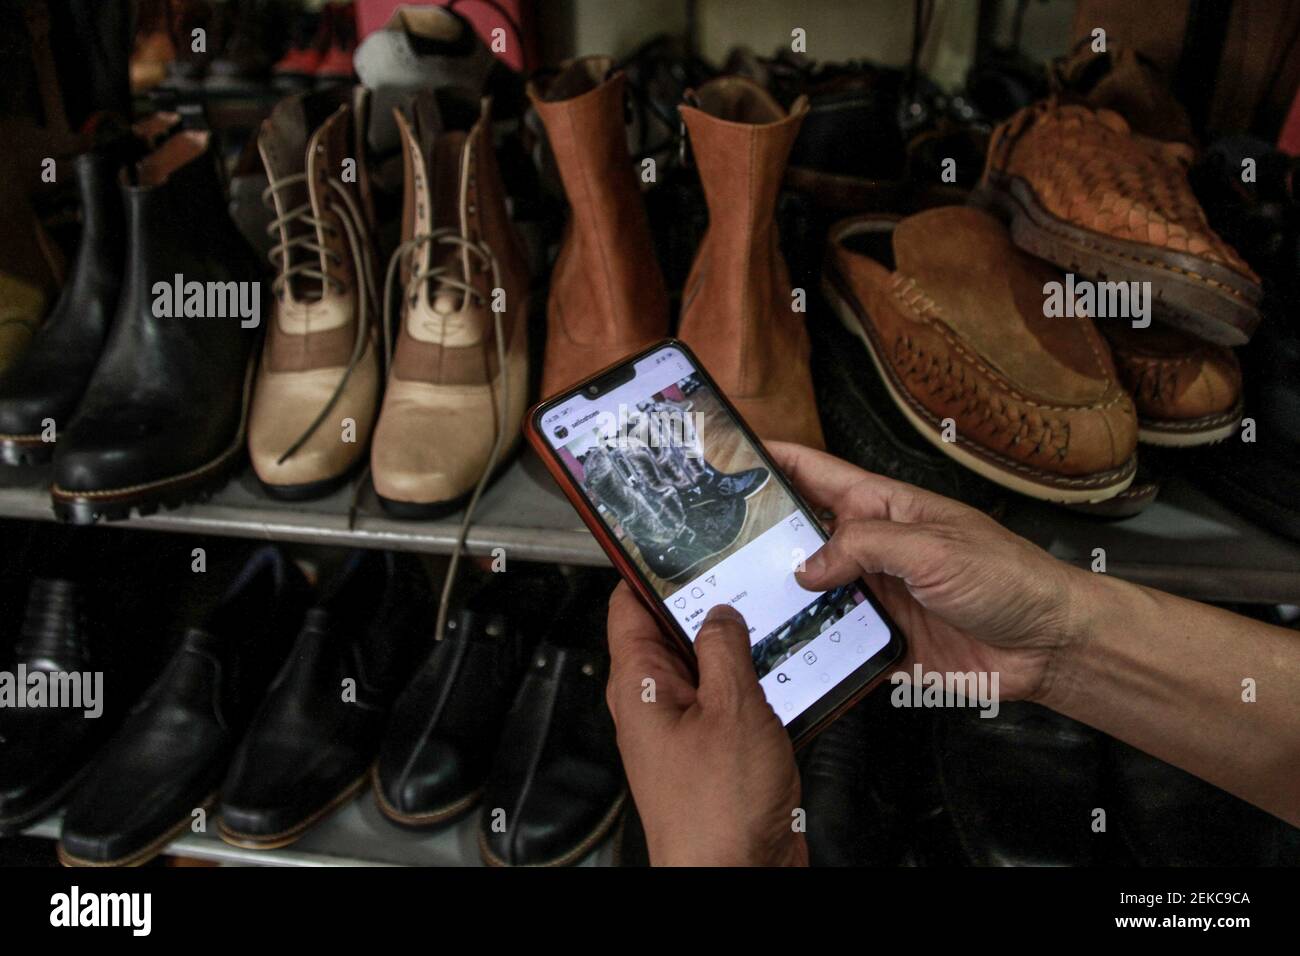 reducir viva Escrutinio Un propietario de zapatería toma fotos de zapatos para vender en línea en  Malang. Rini, el dueño de la zapatería se ve obligado a hacer la promoción  y las ventas en línea